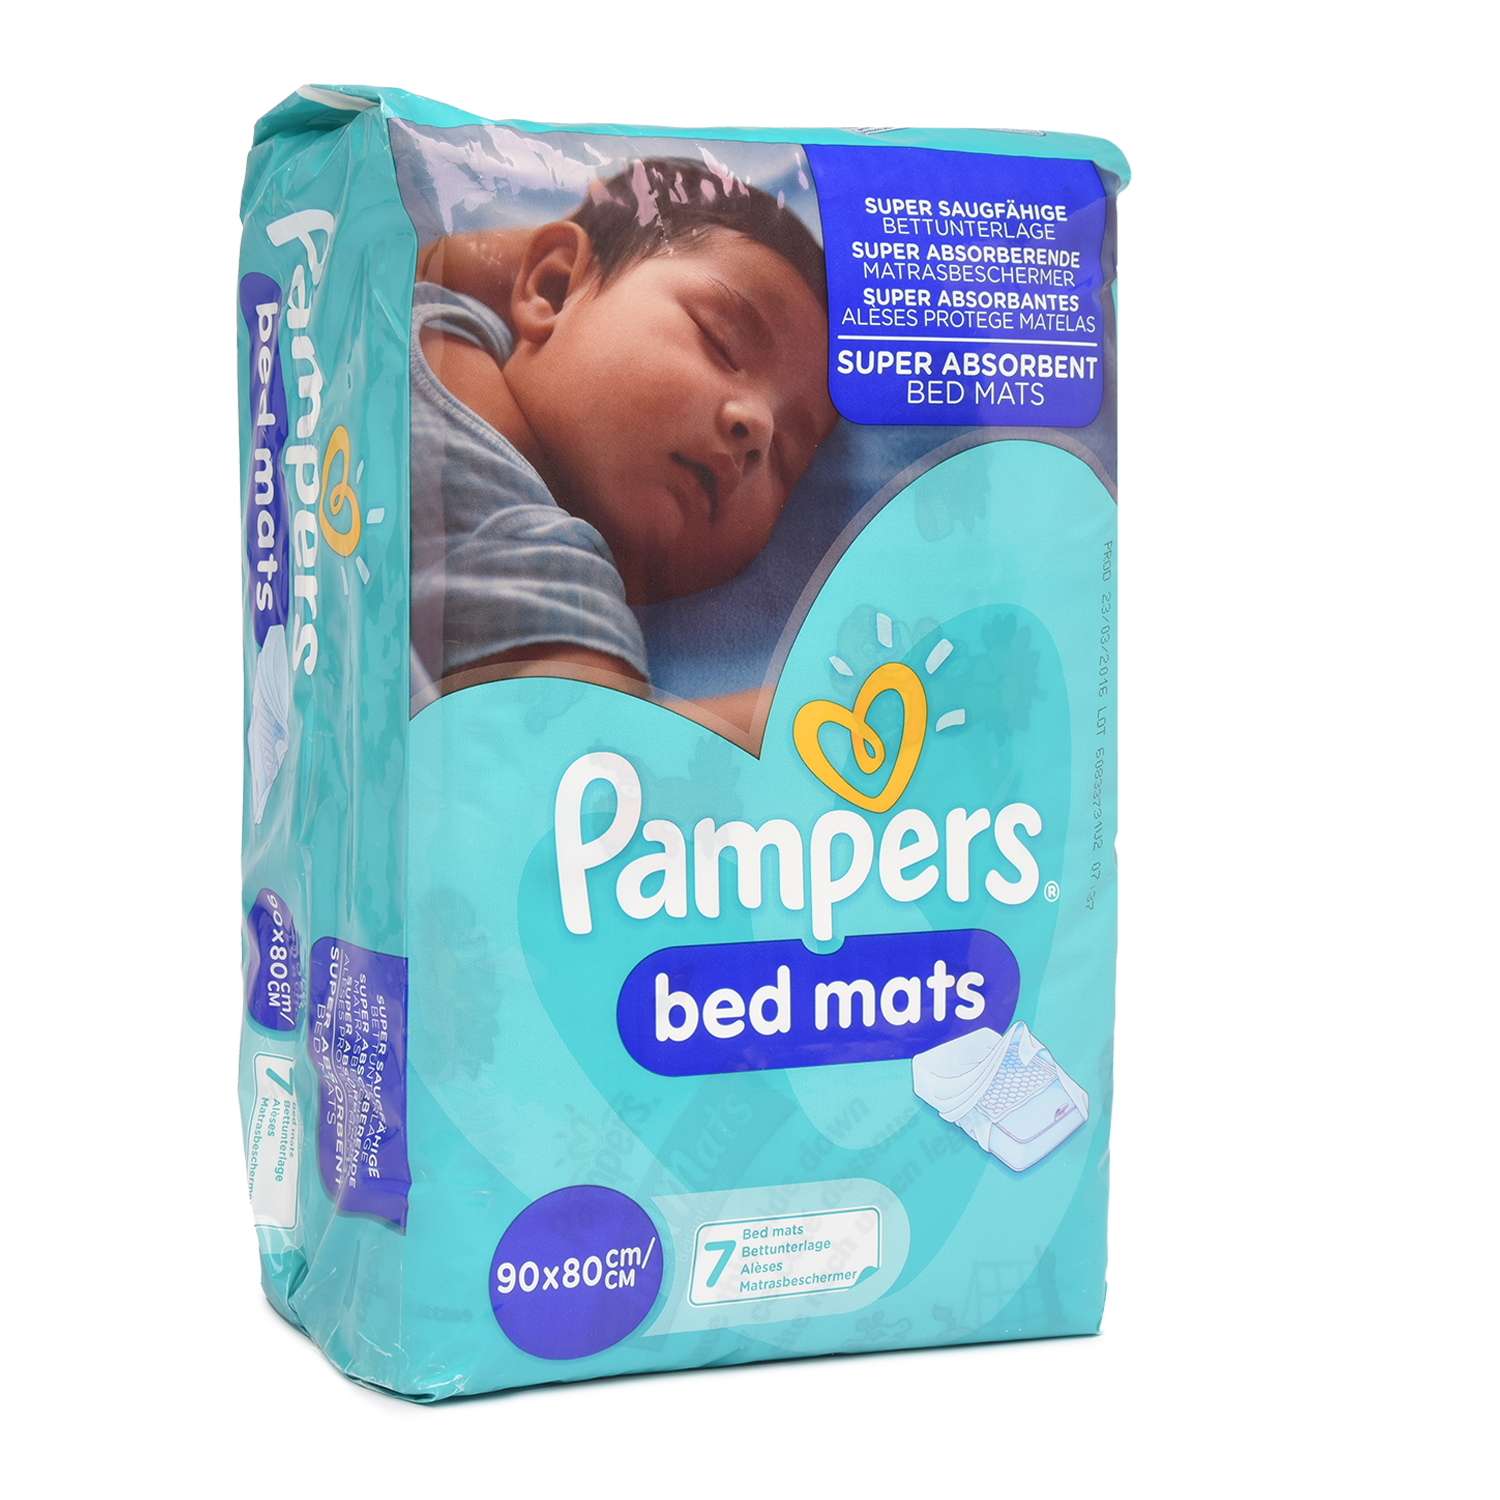 Простыни Pampers BedMats впитывающие 90*80см 7шт - фото 2